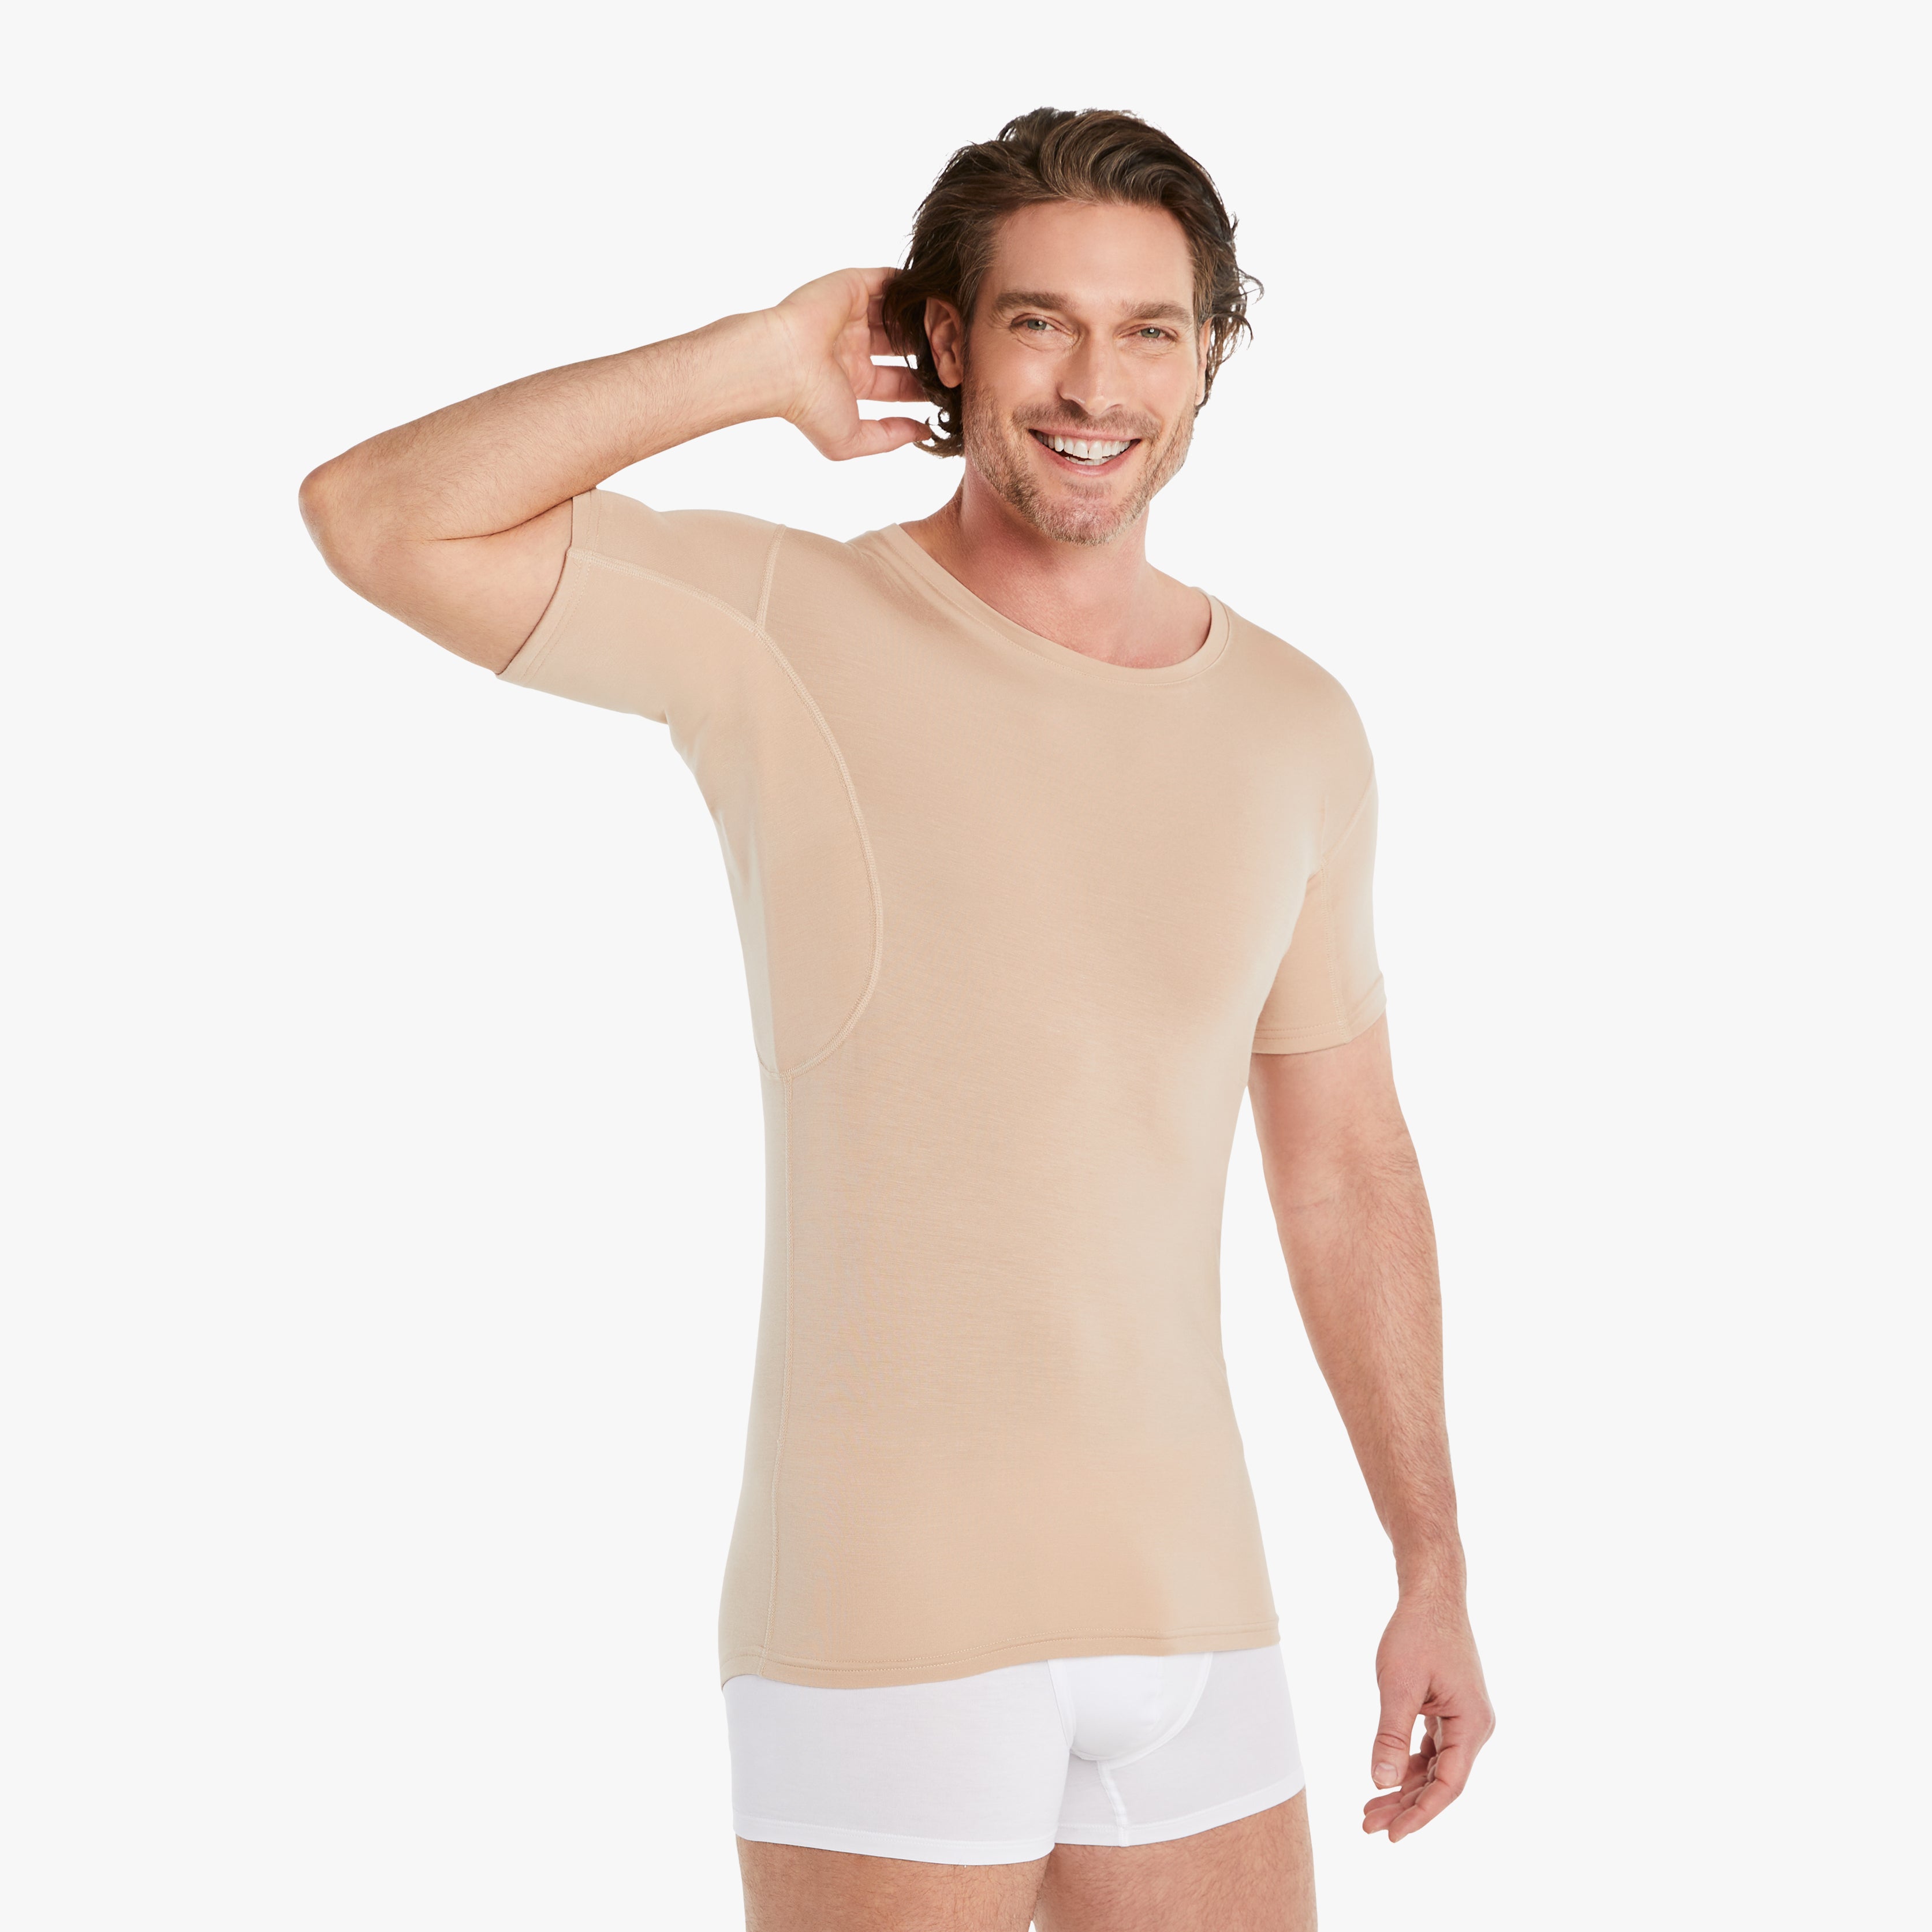 Zufriedener Mann trägt nude Anti-Schweiß Unterhemd Herren mit Rundhals, Größe M. 100% Schutz vor Schweißflecken, innovativer 3-Lagen Technologie. Zertifizierter Tragekomfort, während er lächelnd die Achseln ohne Schweißflecken zeigt. #farbe_nude